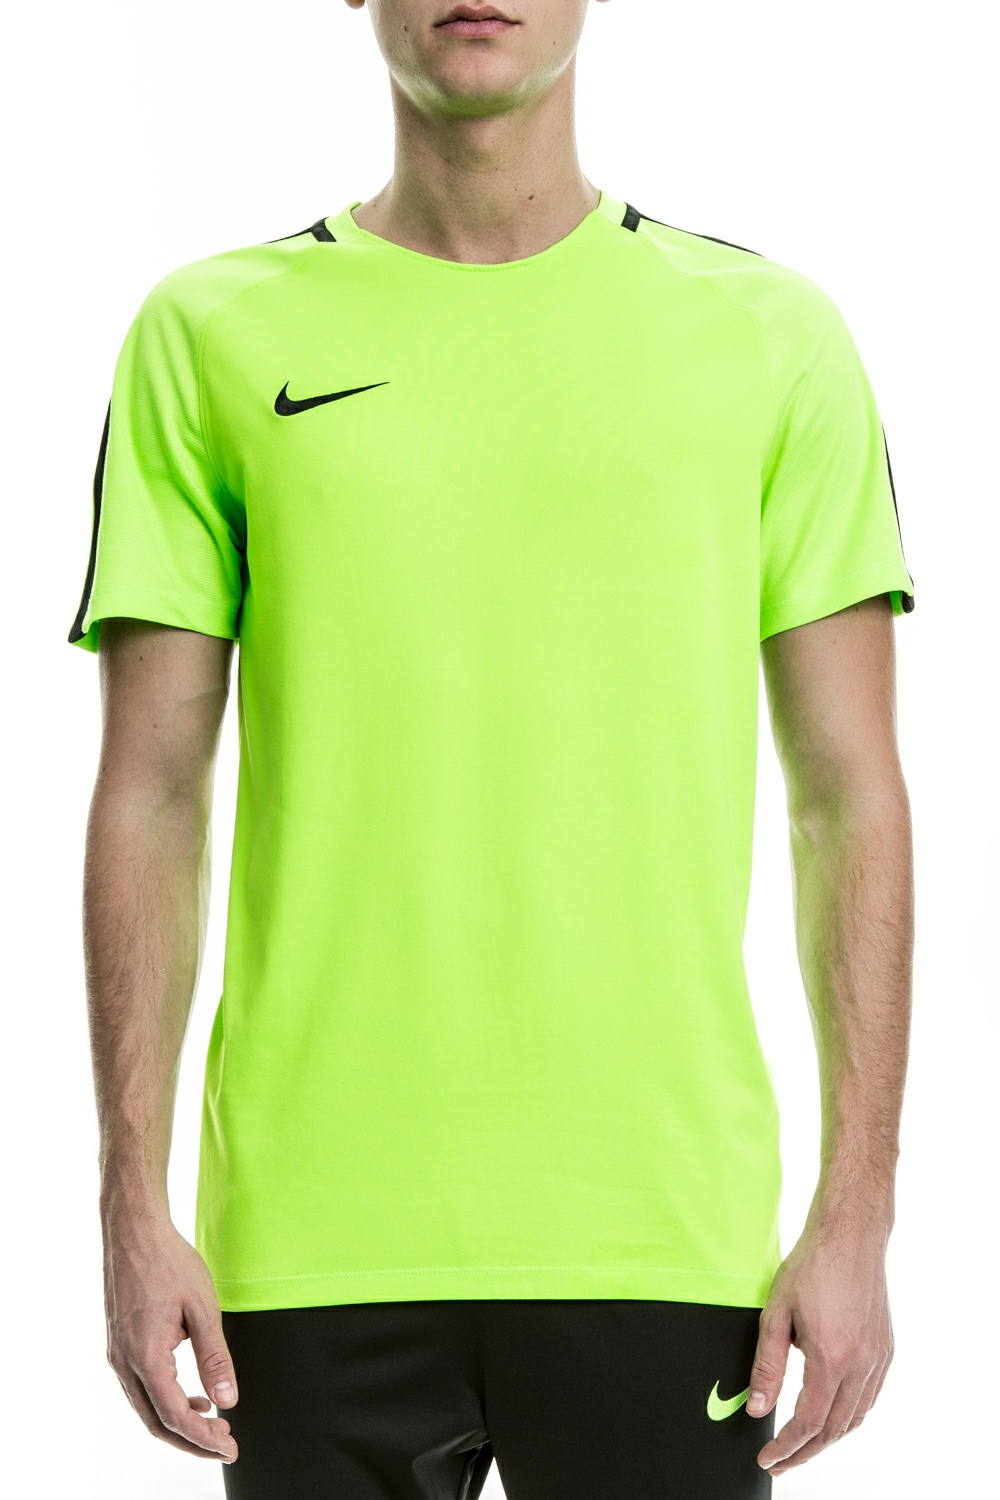 NIKE - Αθλητική κοντομάνικη μπλούζα Nike πράσινη Ανδρικά/Ρούχα/Αθλητικά/T-shirt